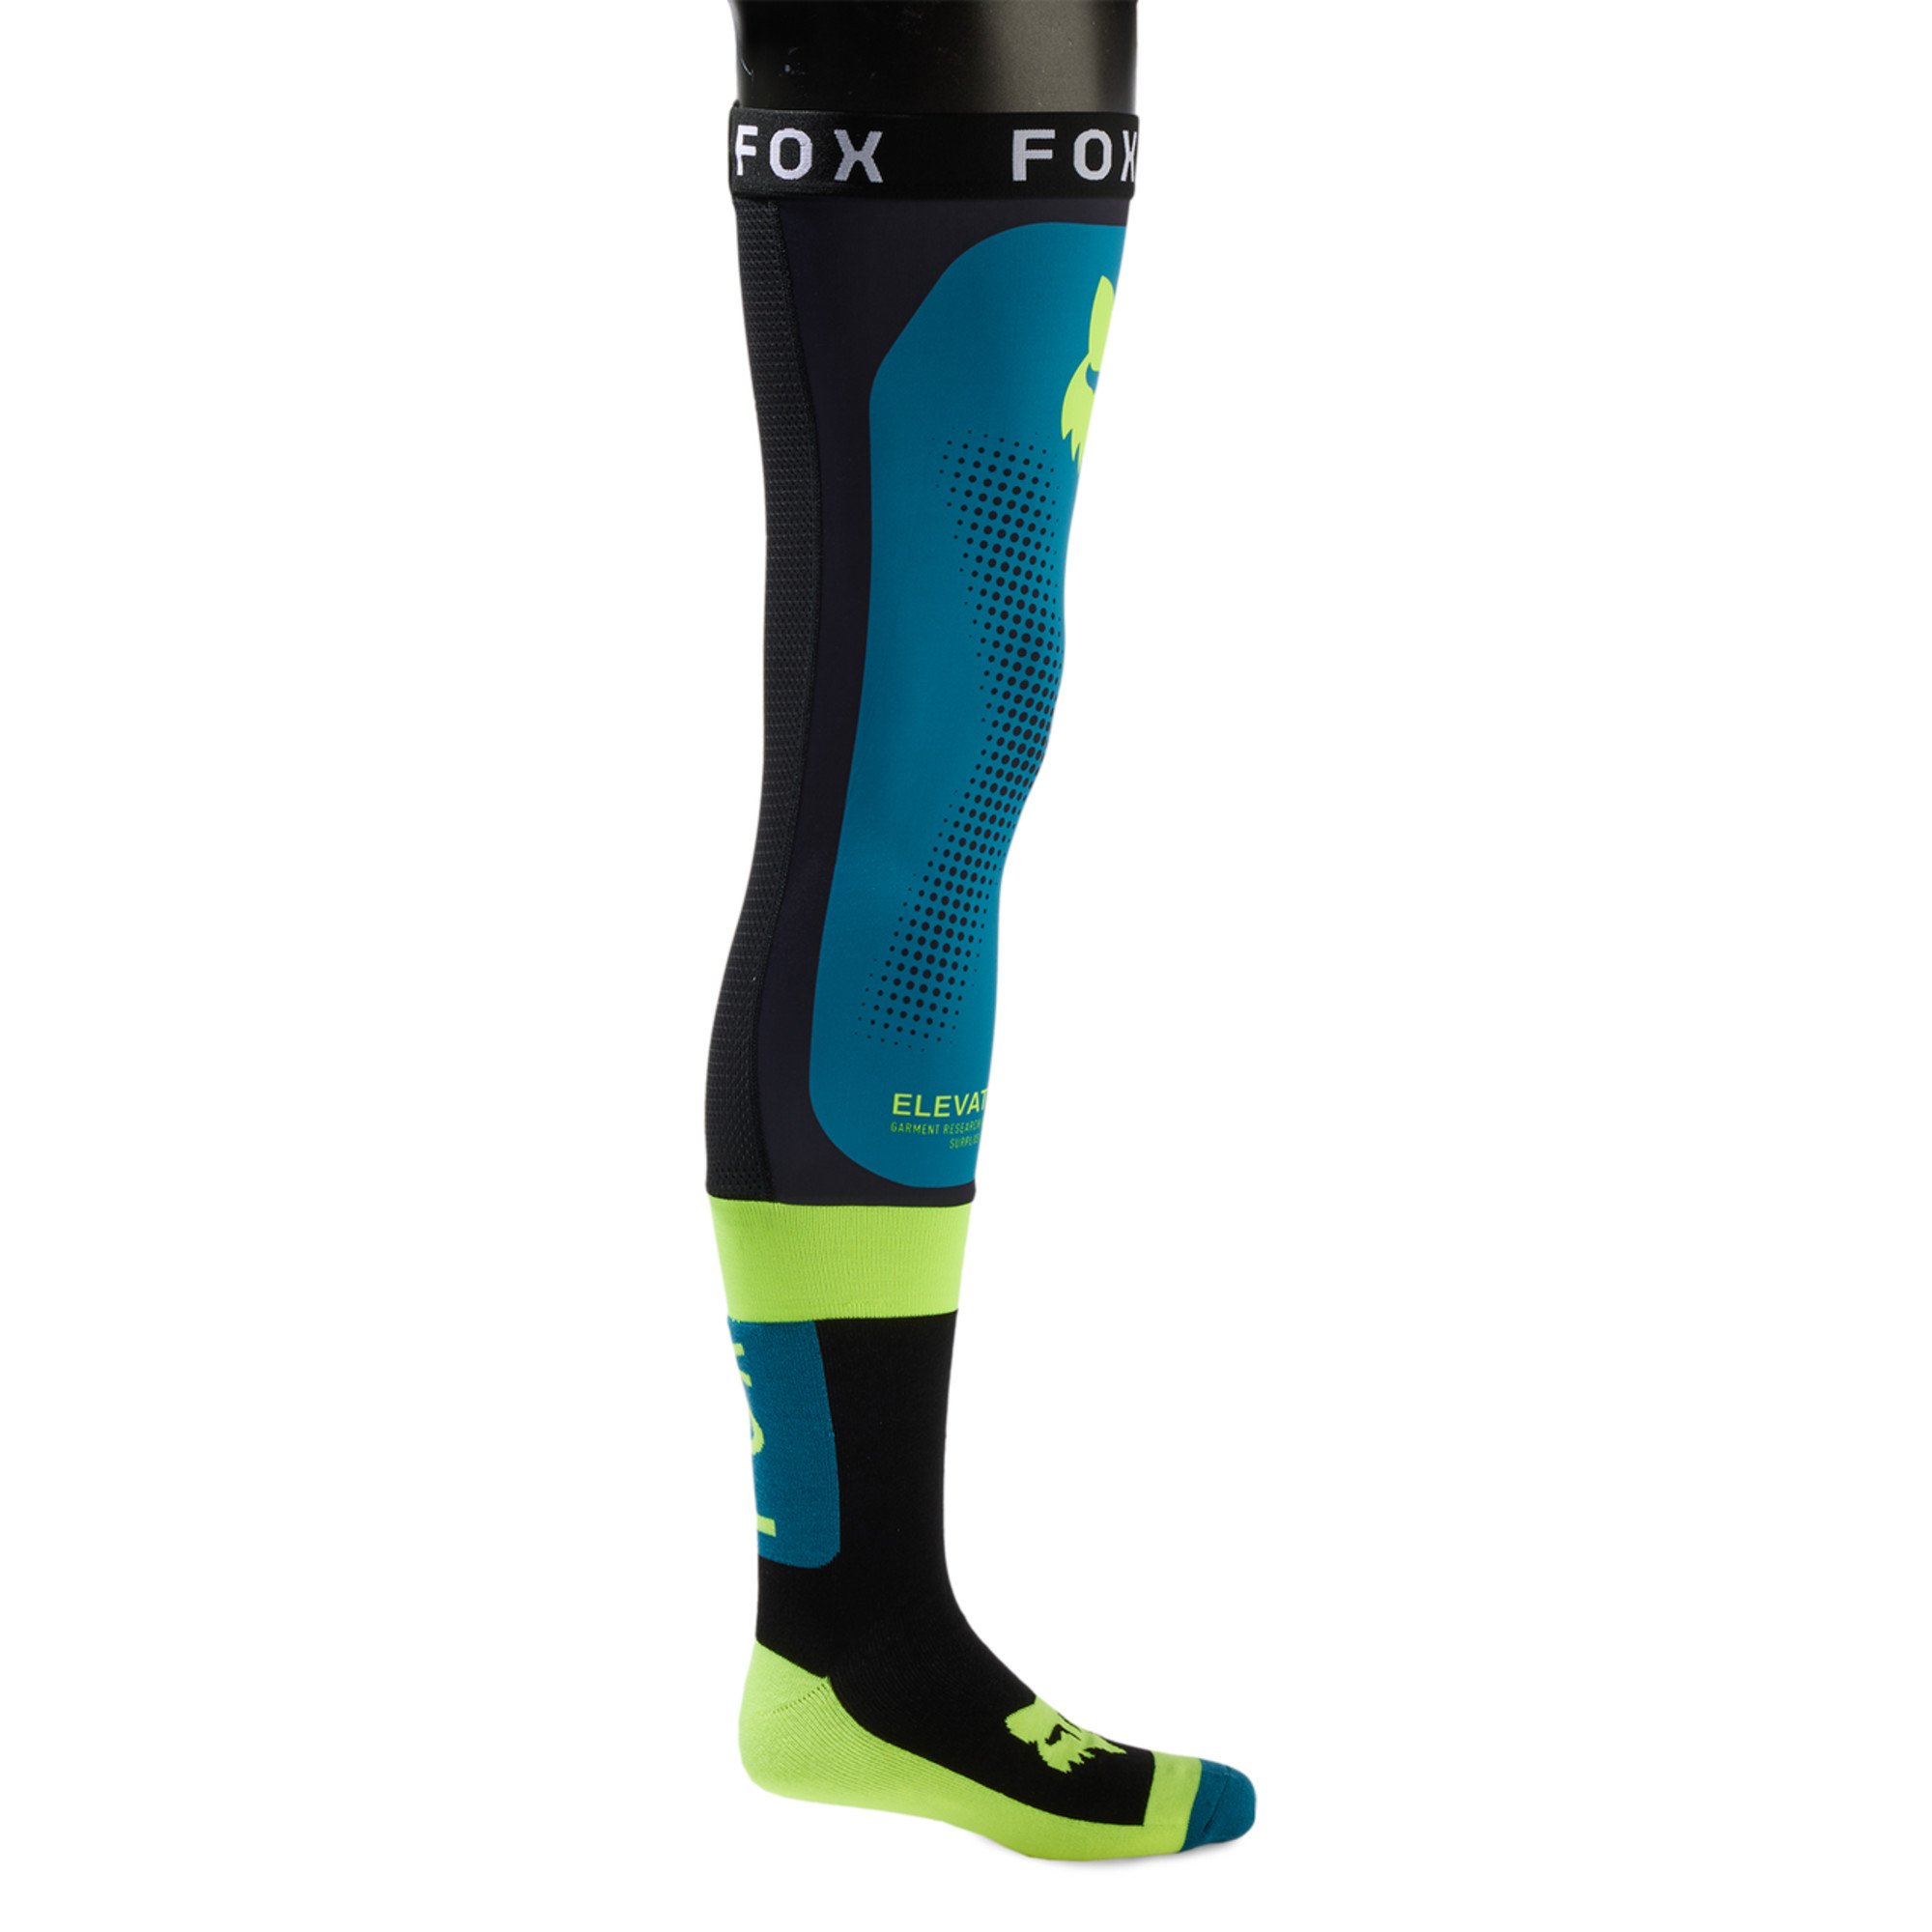 fox racing socks  flexair knee brace socks - dirt bike